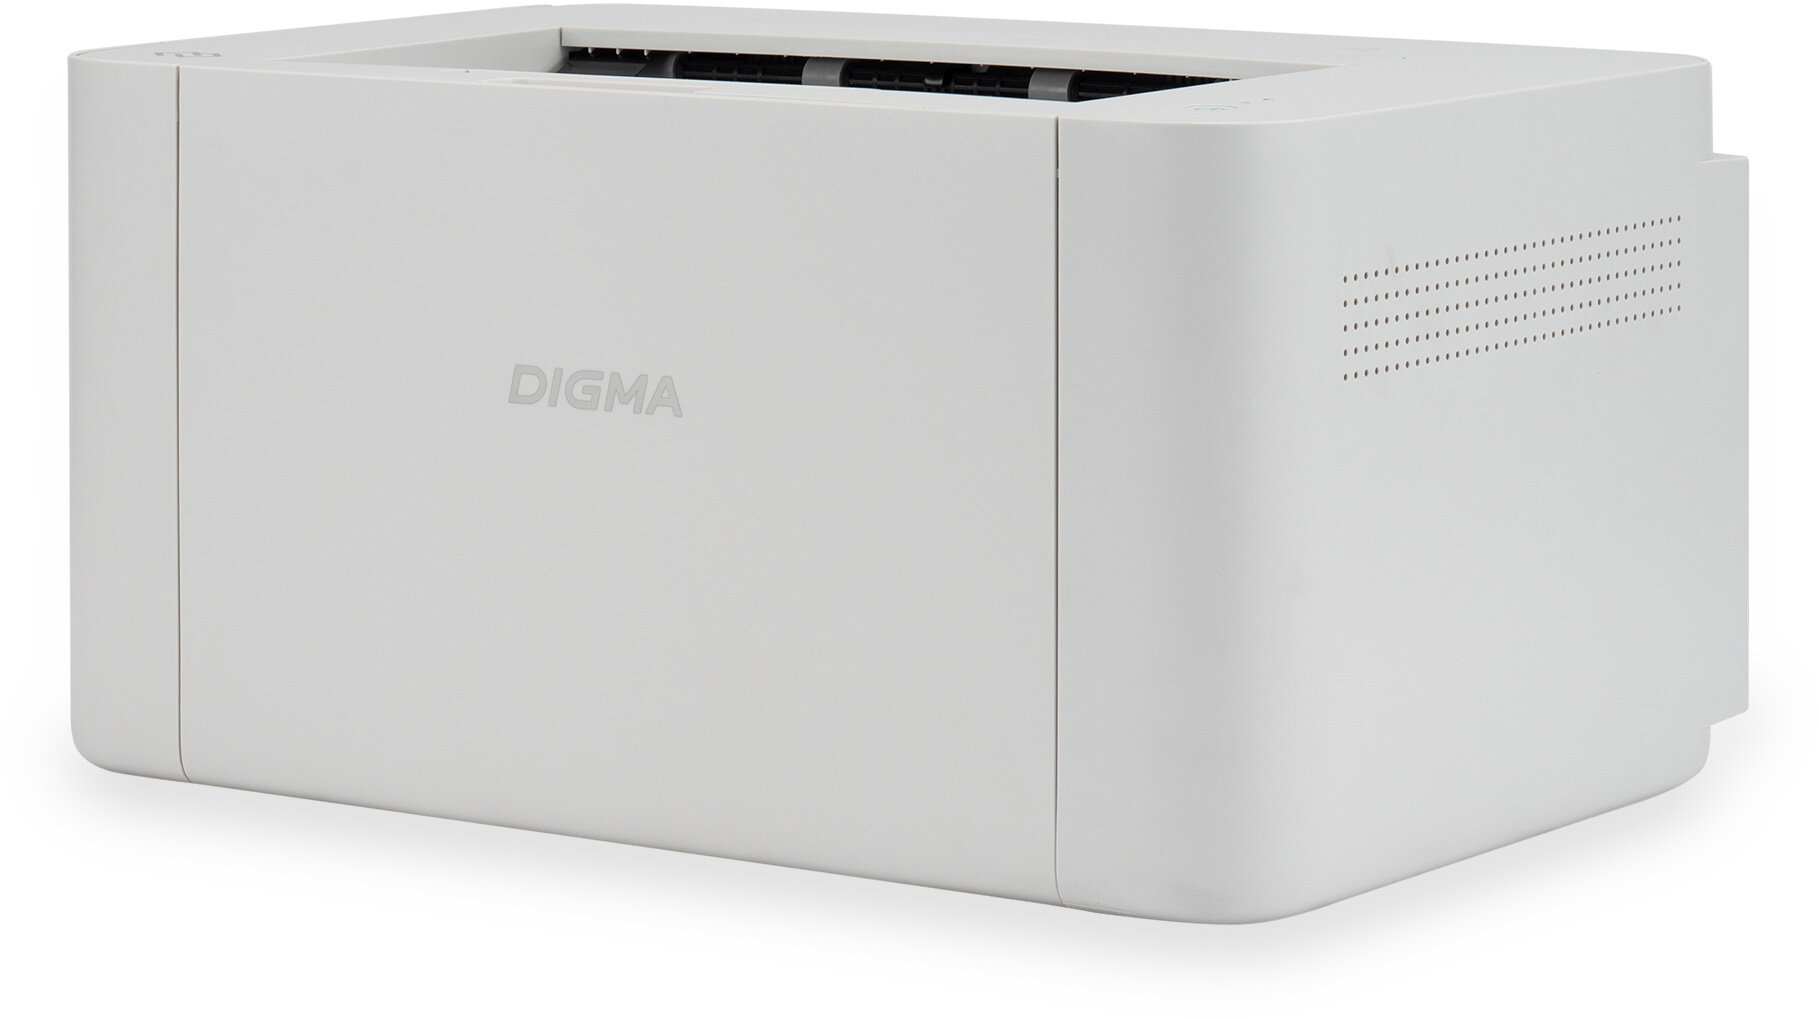 Принтер лазерный Digma DHP-2401W черно-белая печать A4 цвет серый